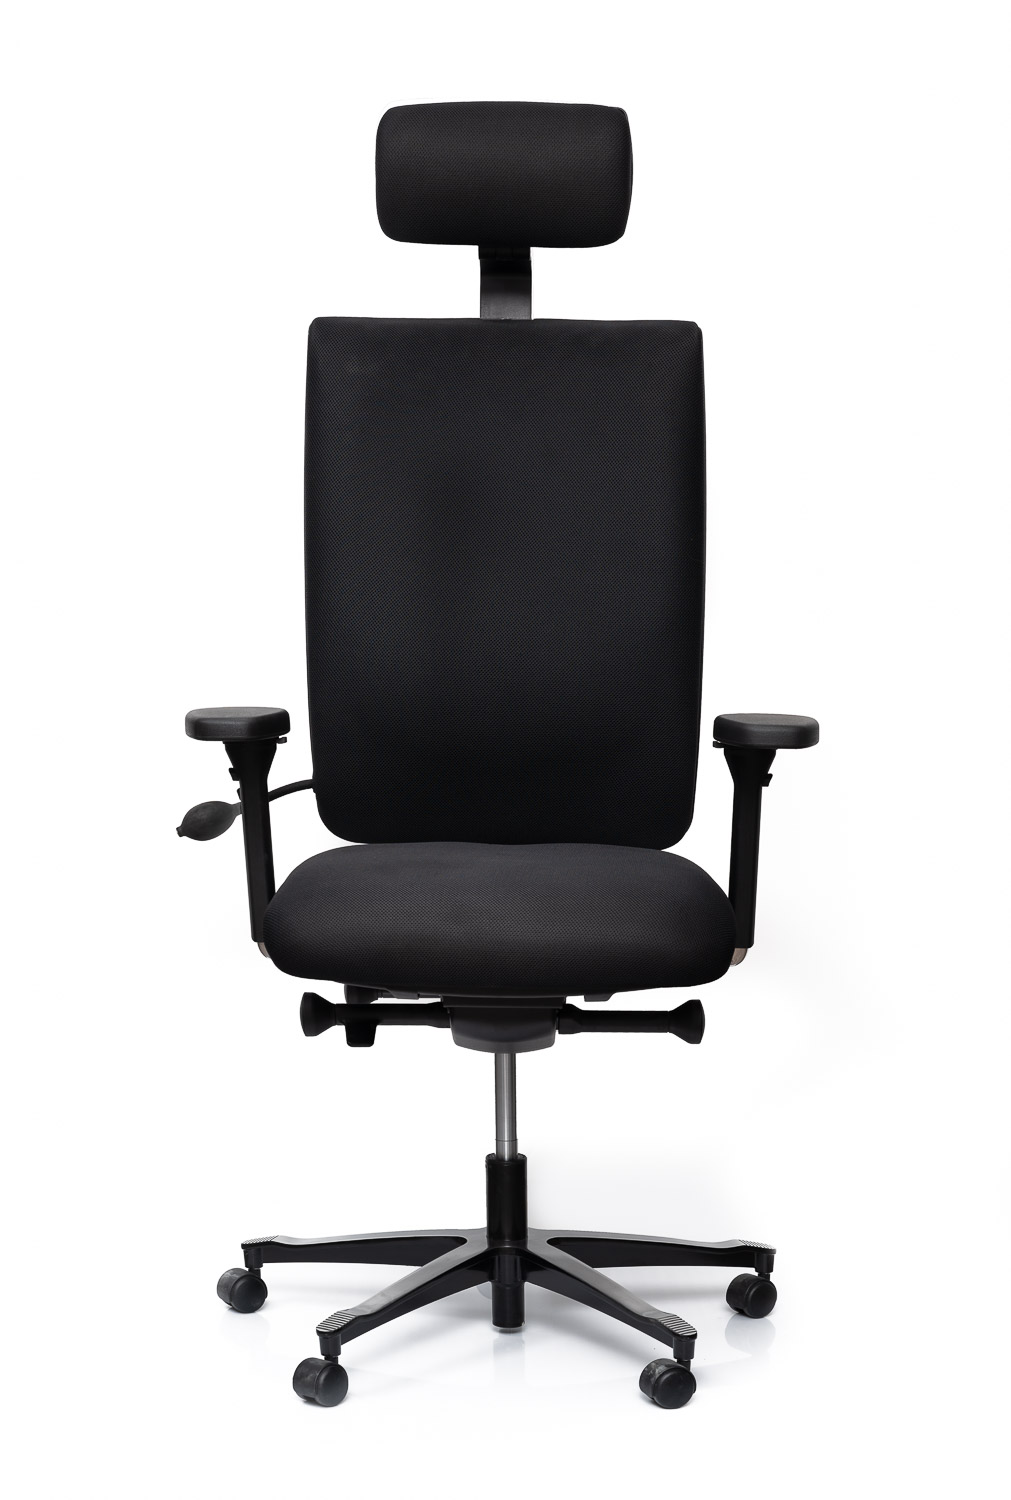 Fauteuil ergonomique Efficient Chair